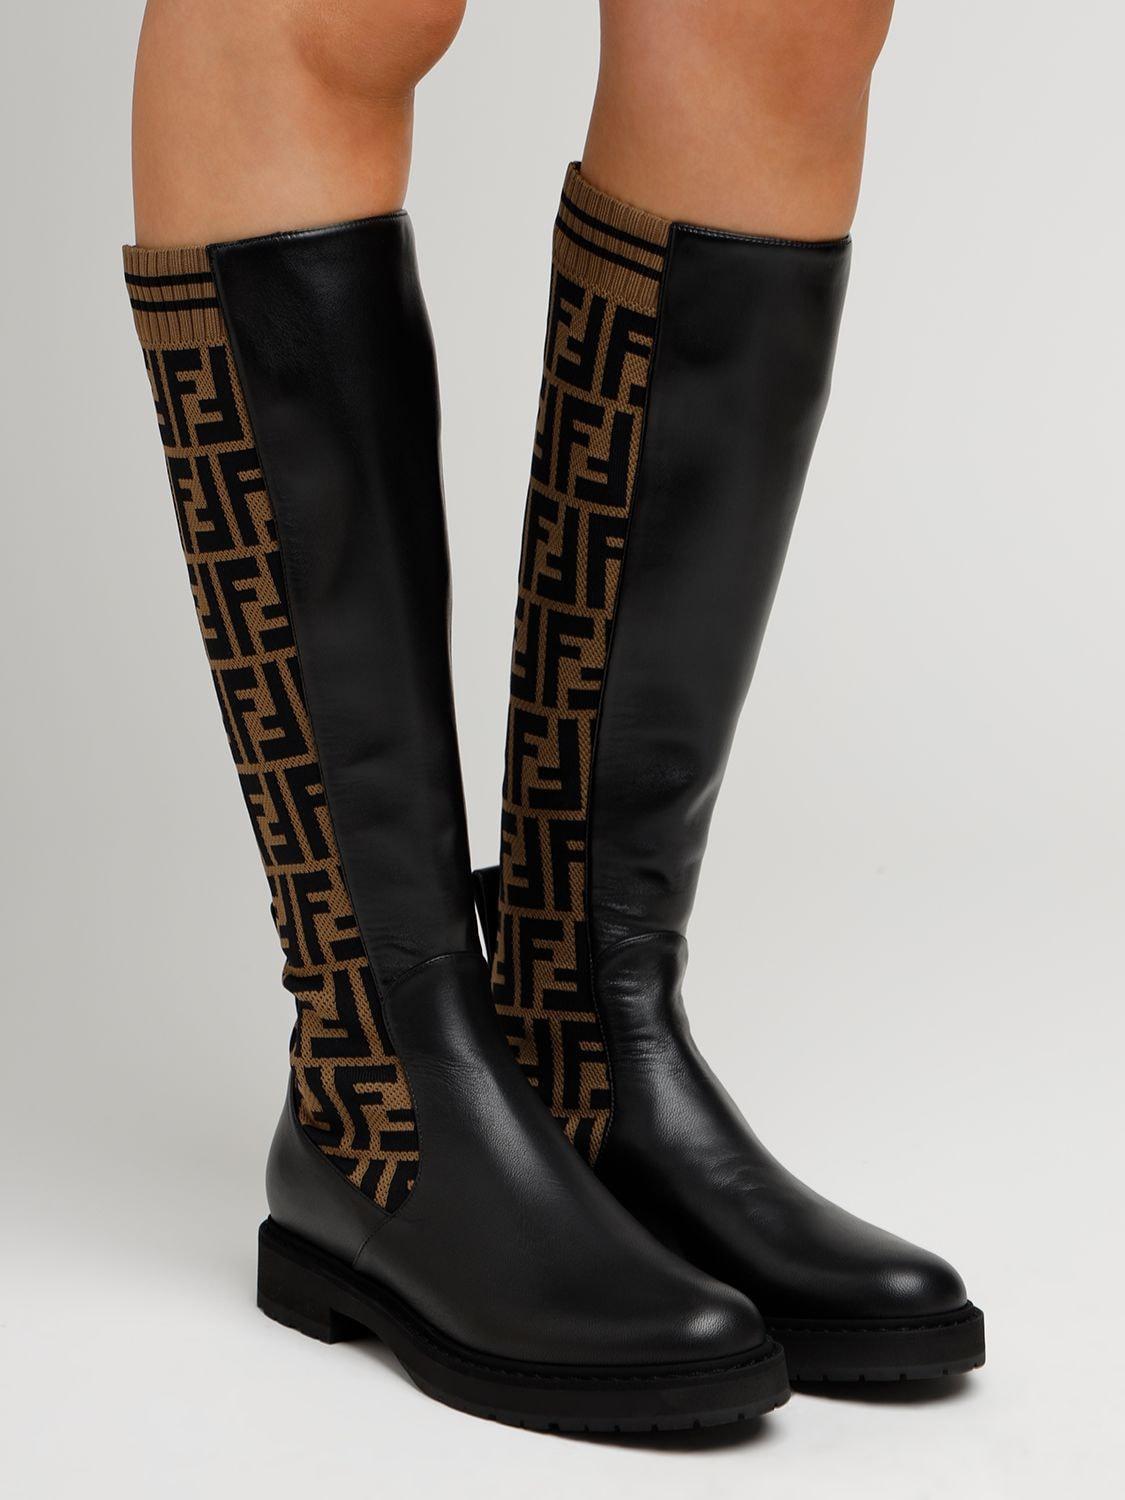 Fendi 30mm Tall Leather & Knit Sock Boots in Black | Lyst